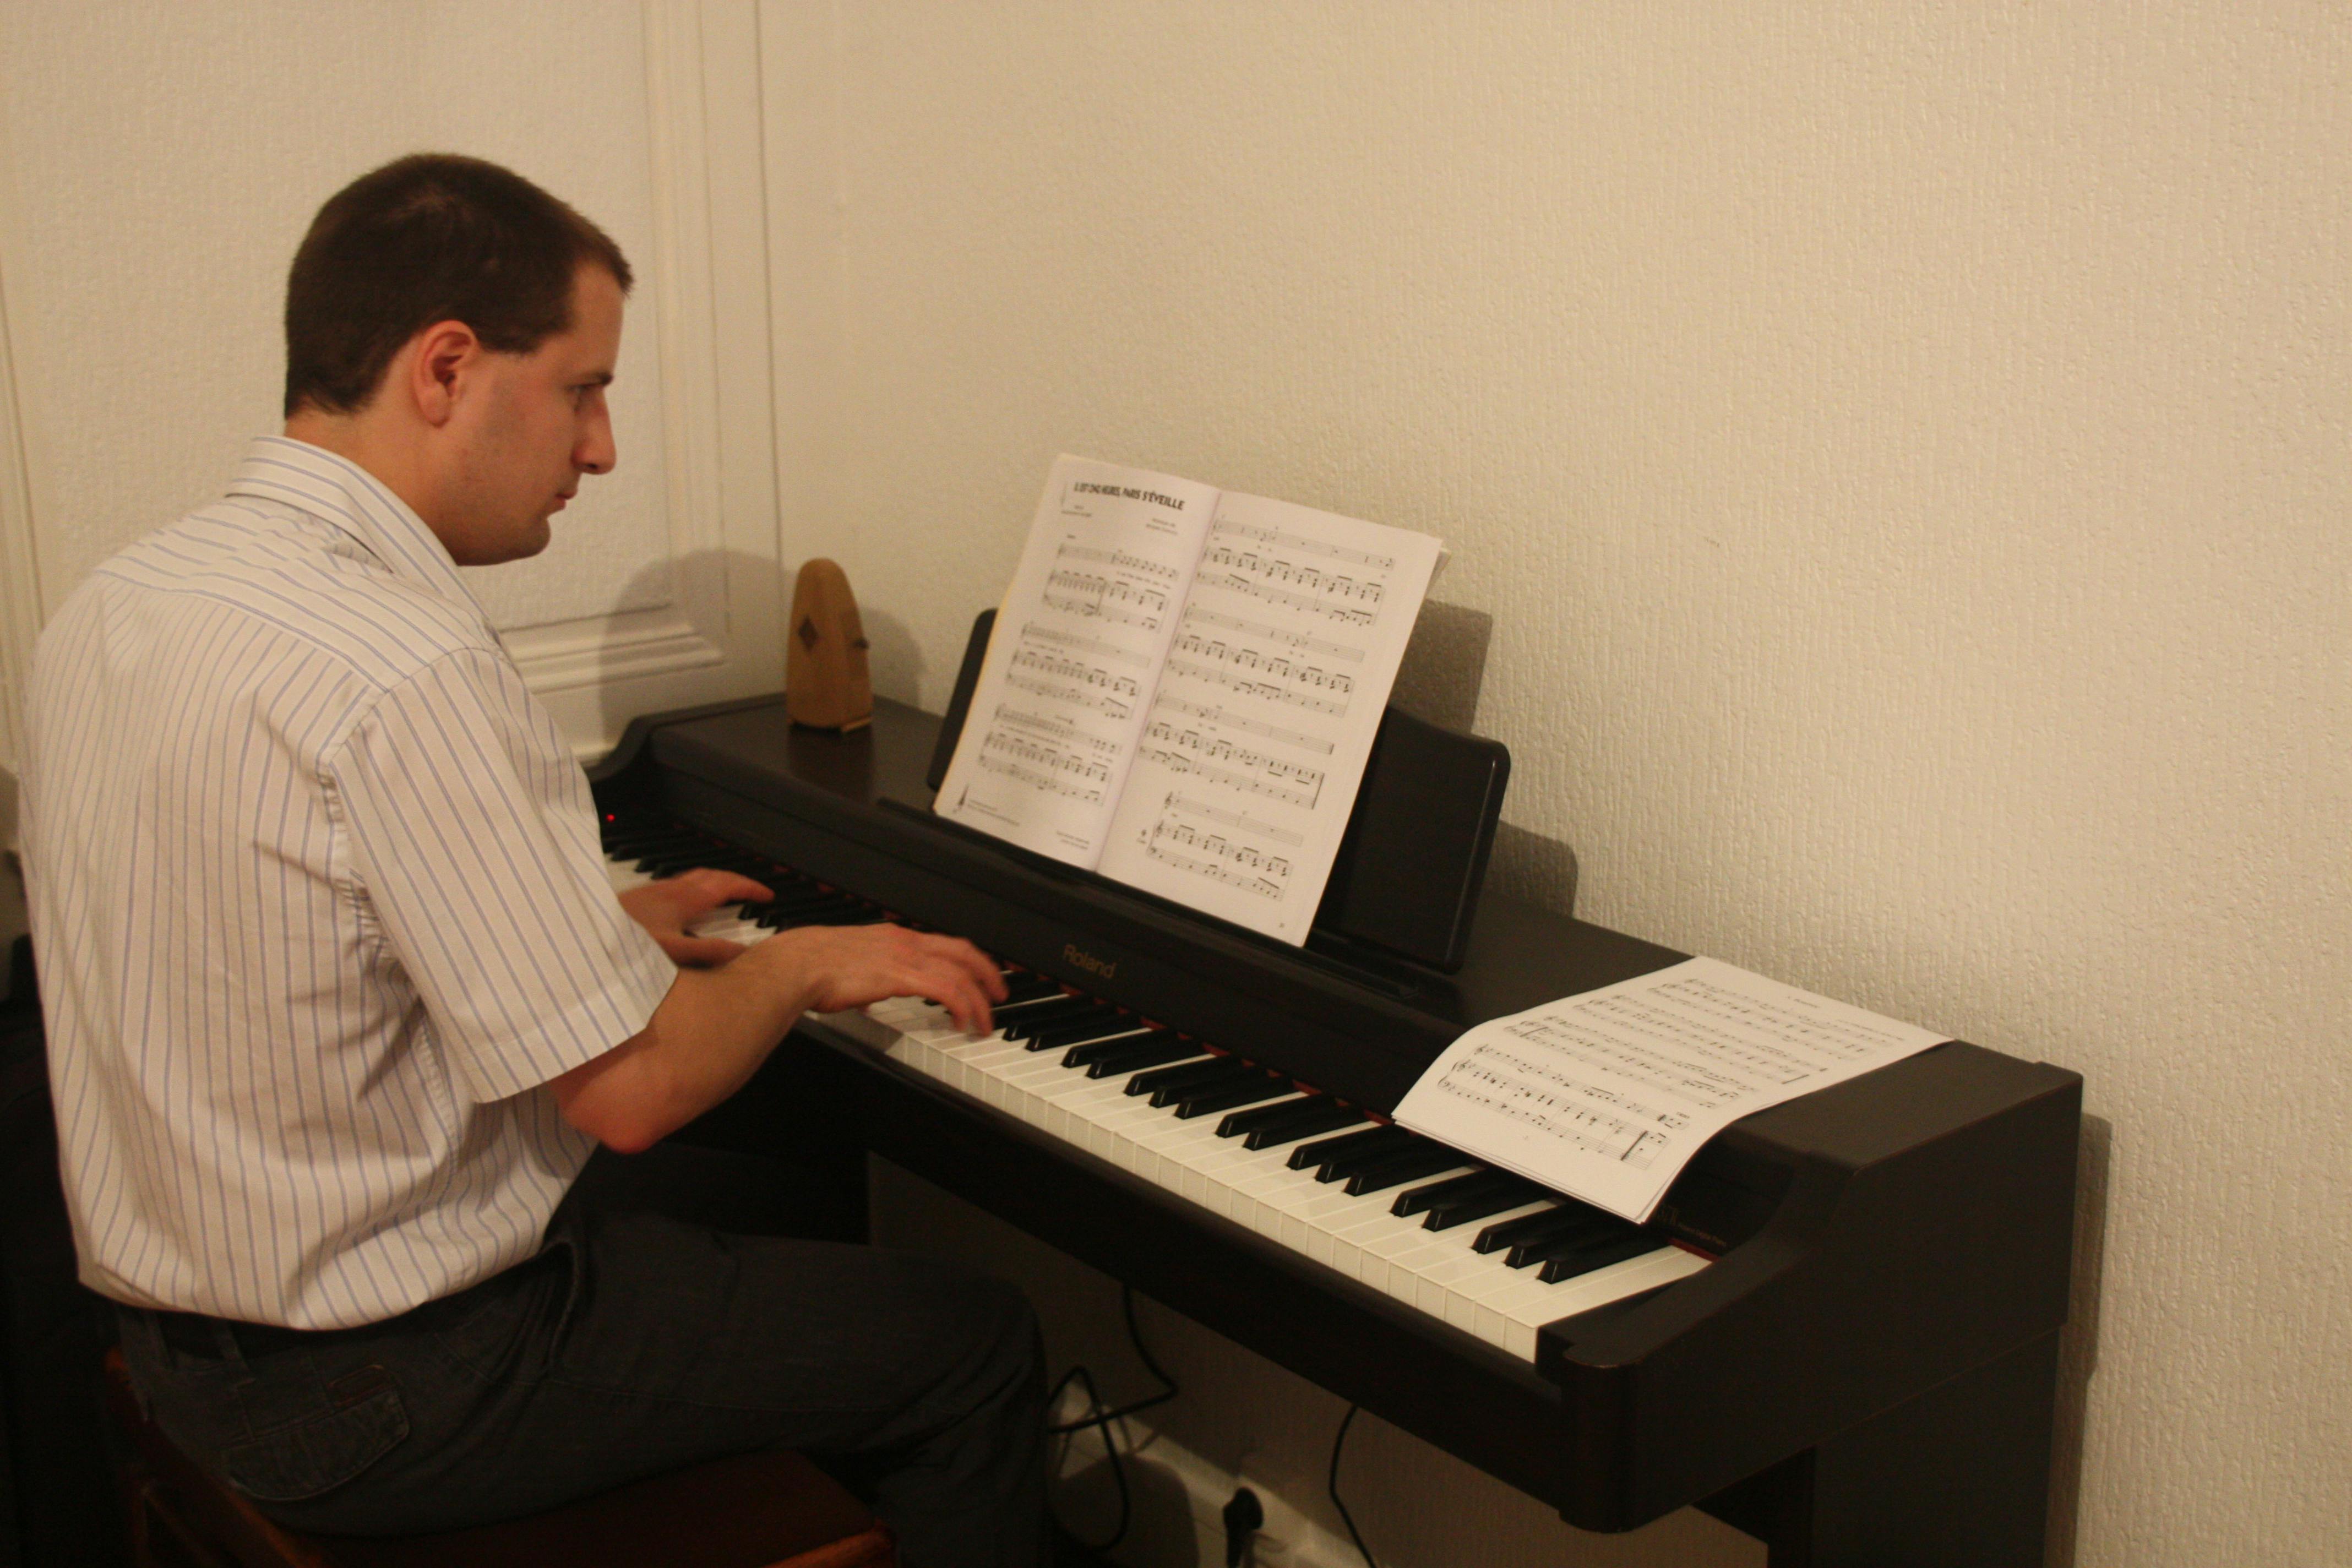 Cours particuliers d'orgue, piano, solfège pour débutants et intermédiaires  - Mons - Cours particulier